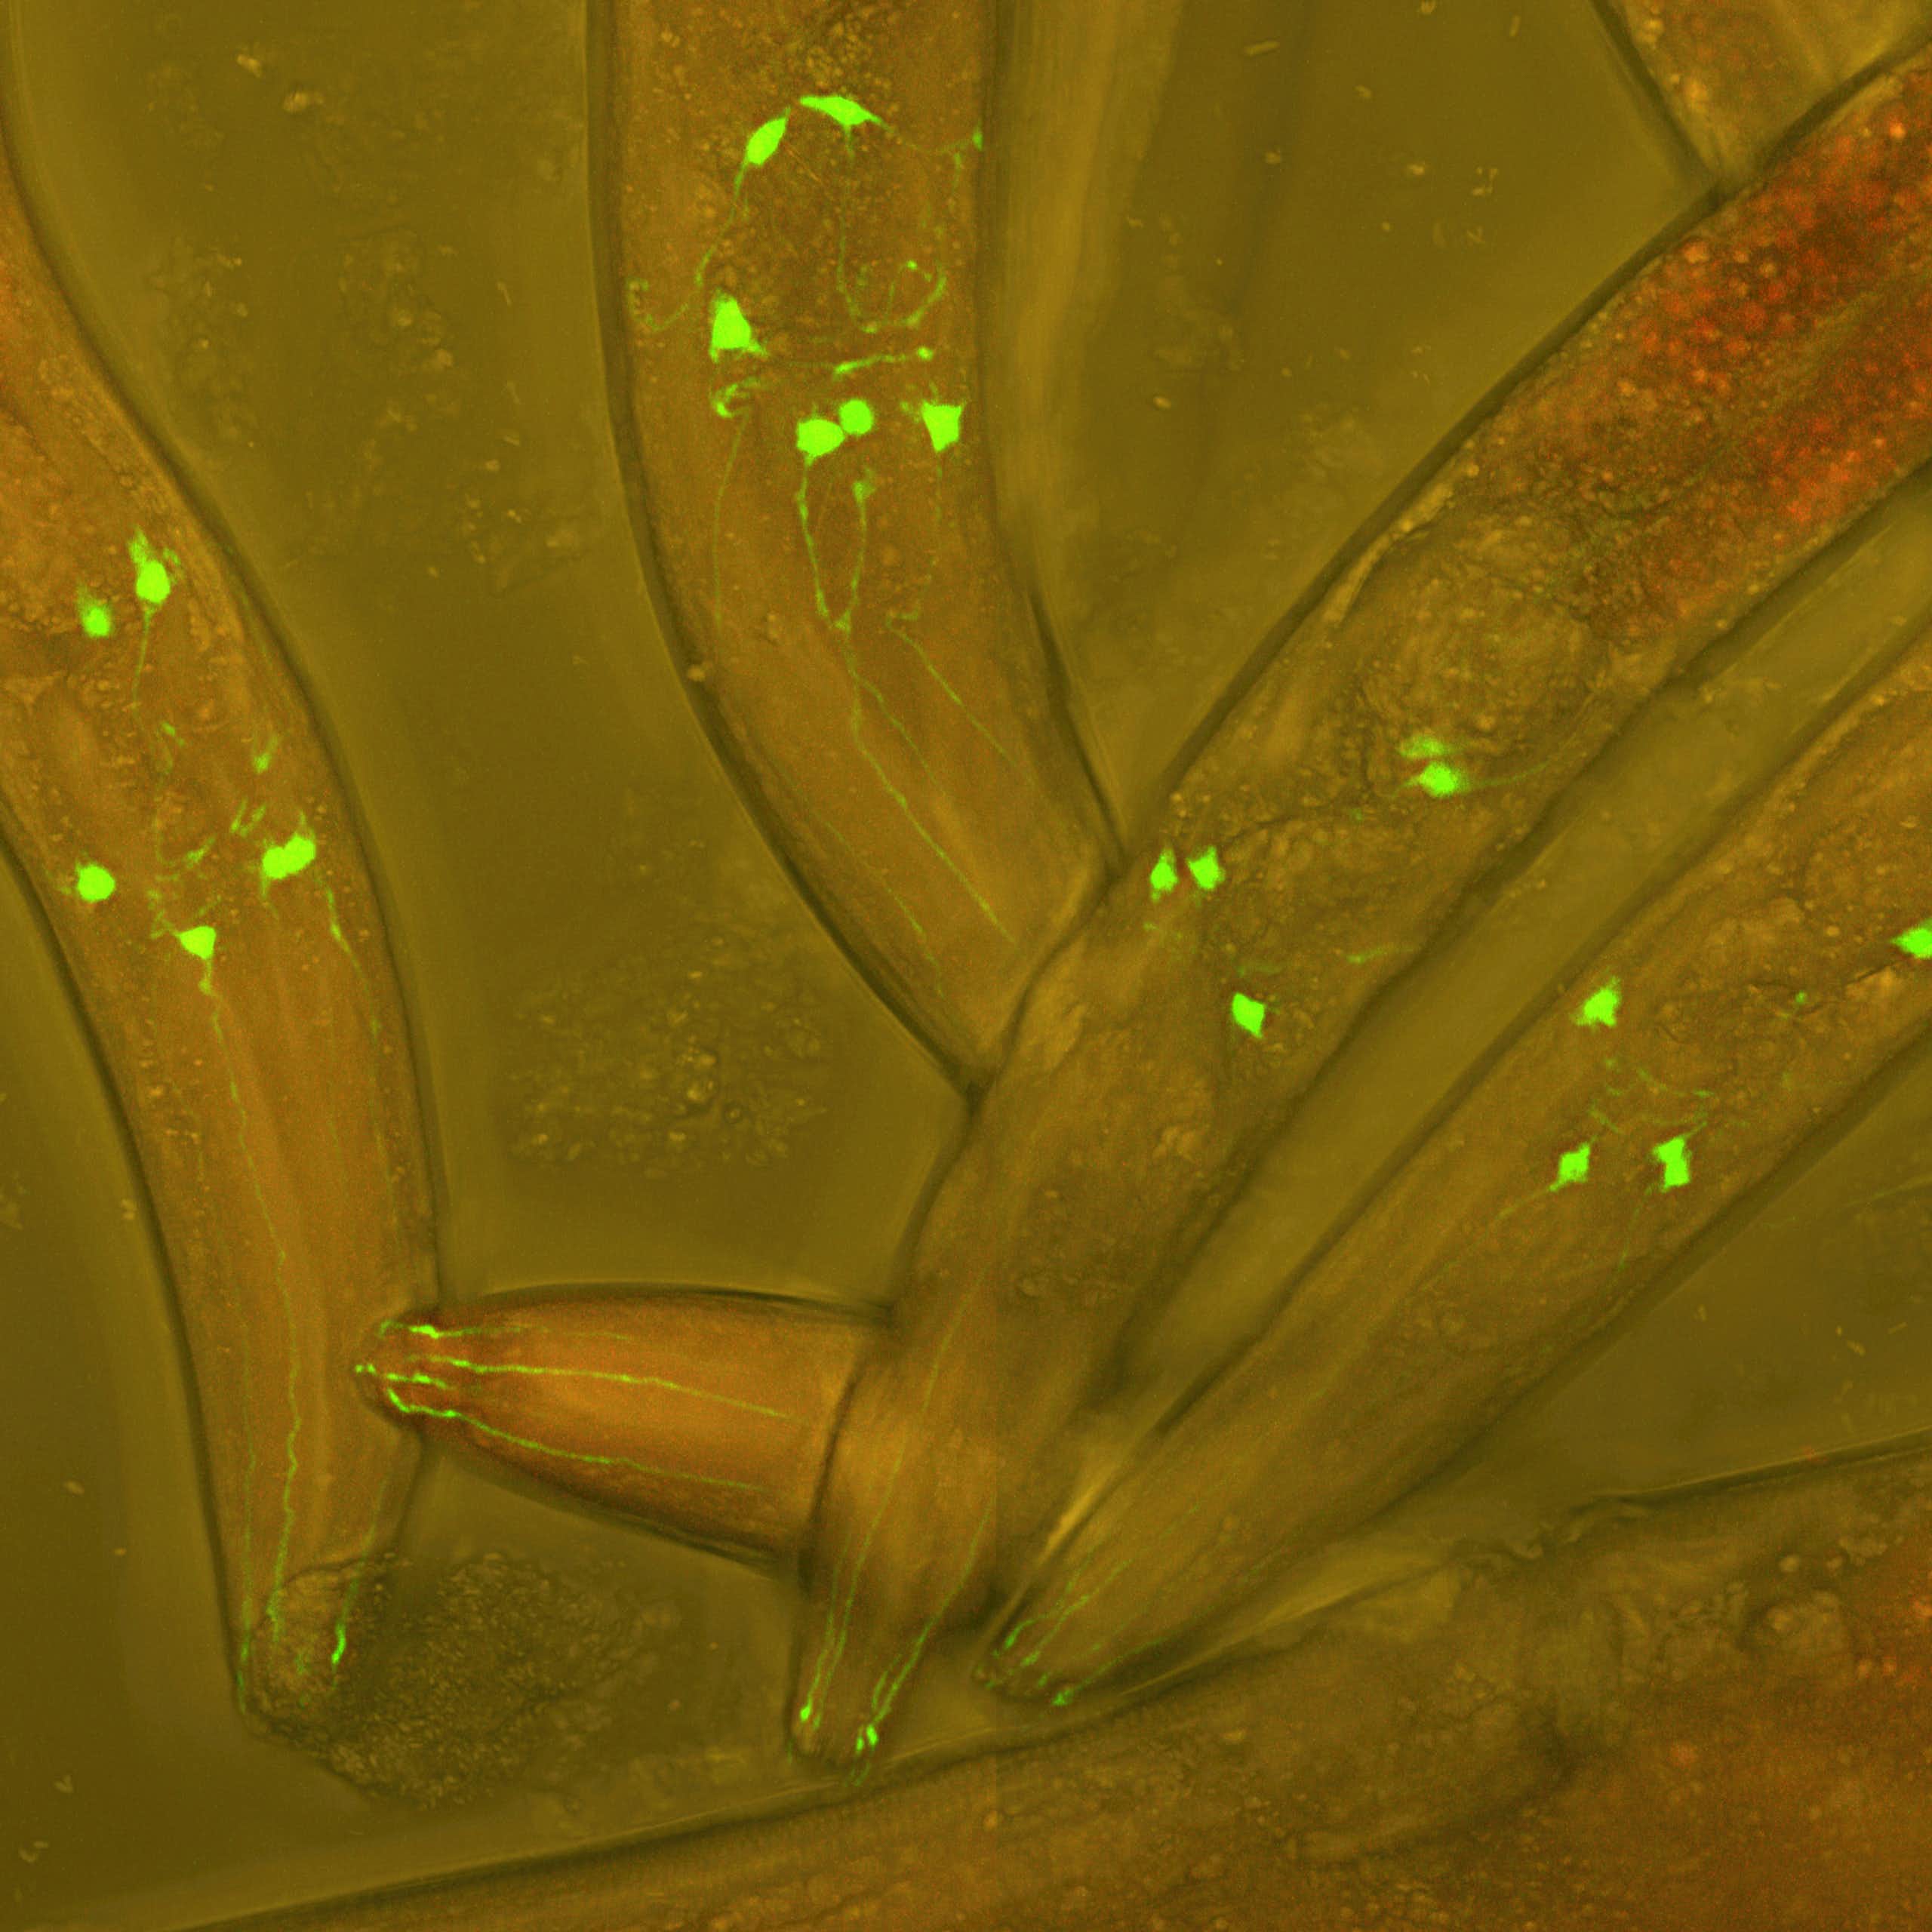 Vers Caenorhabditis elegans vivants, dont les neurones sont rendus fluorescents afin de visualiser le développement neuronal dans un ver vivant.